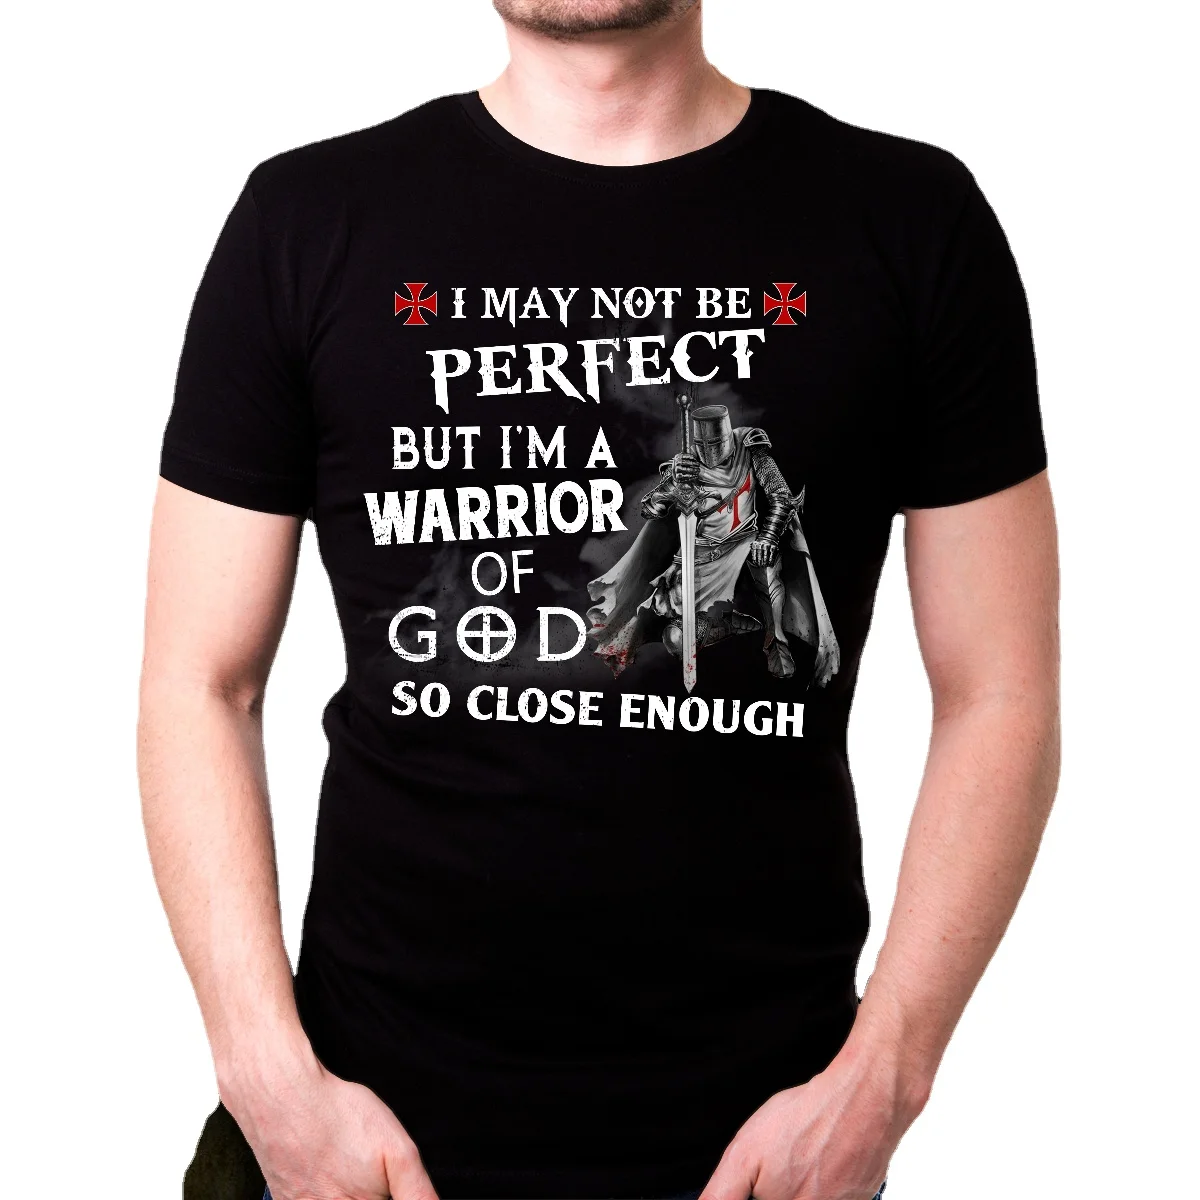 

Christian Knight Templar T-Shirt I Am Warrior Of God Tee Men's Summer Cotton Short Sleeve O-Neck T Shirt Gifts New S-3XL